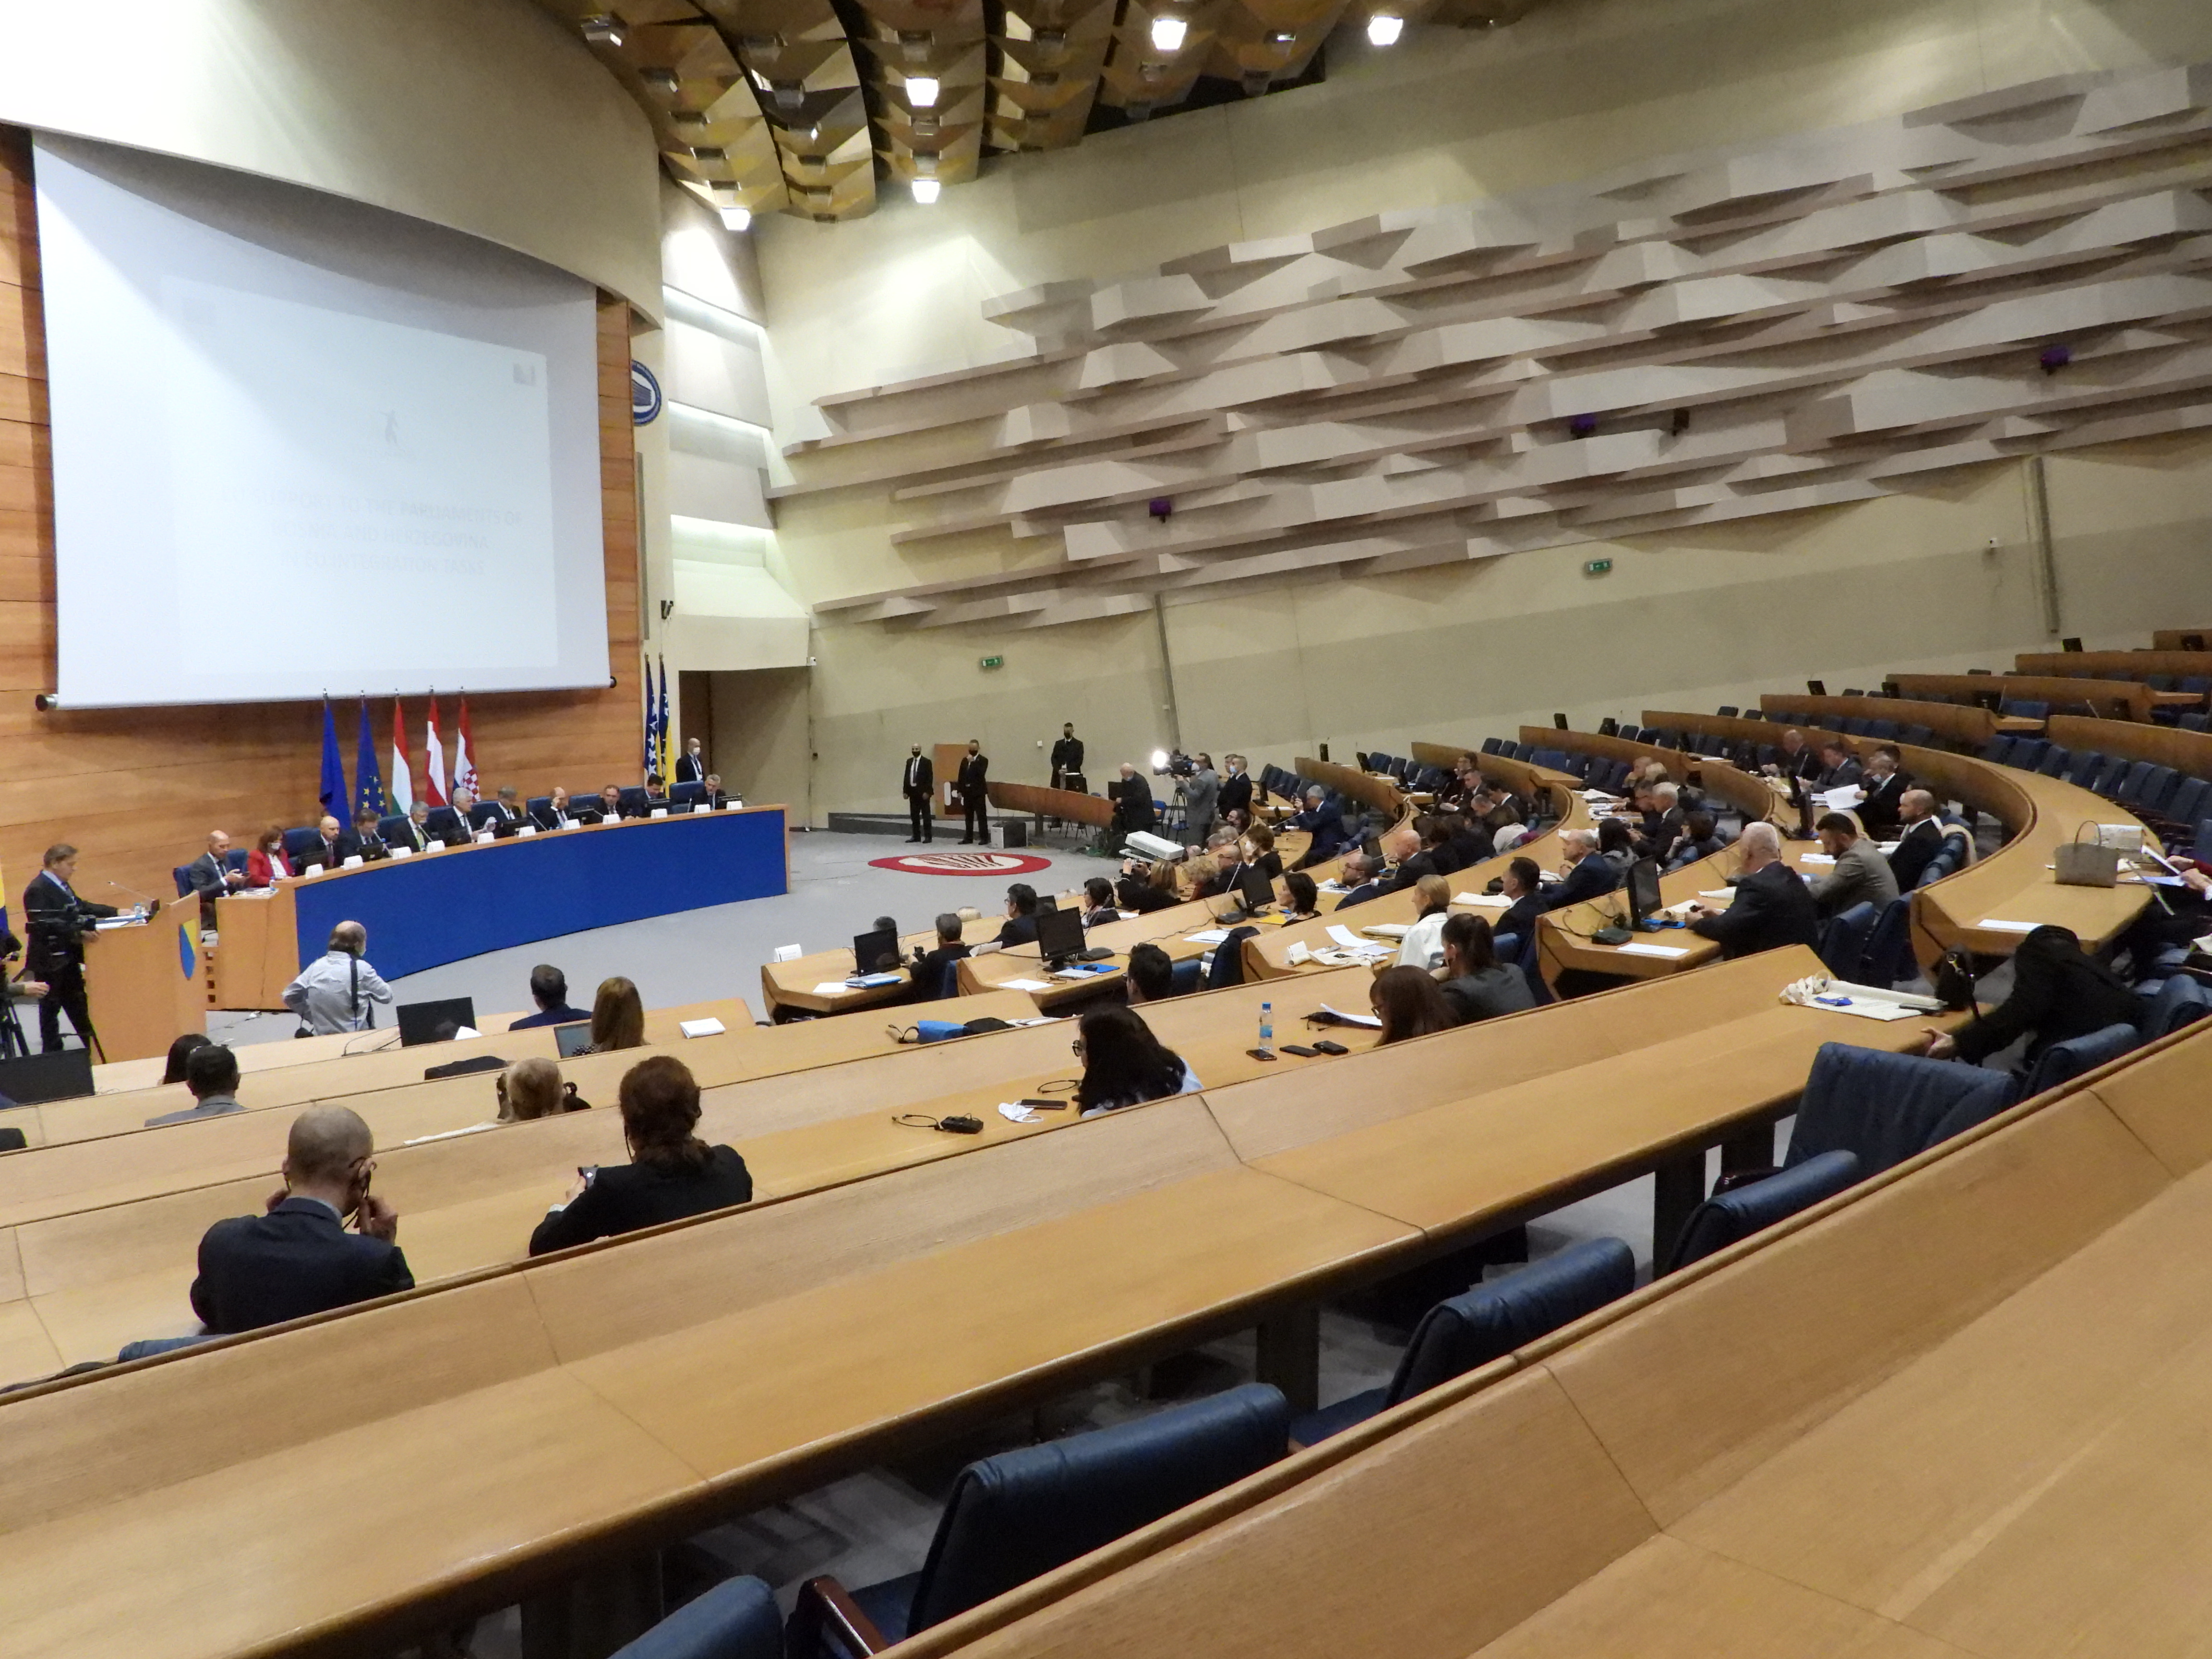 Завршна церемонија Твининг пројекта “Подршка ЕУ парламентима у Босни и Херцеговини у пословима европских интеграција”